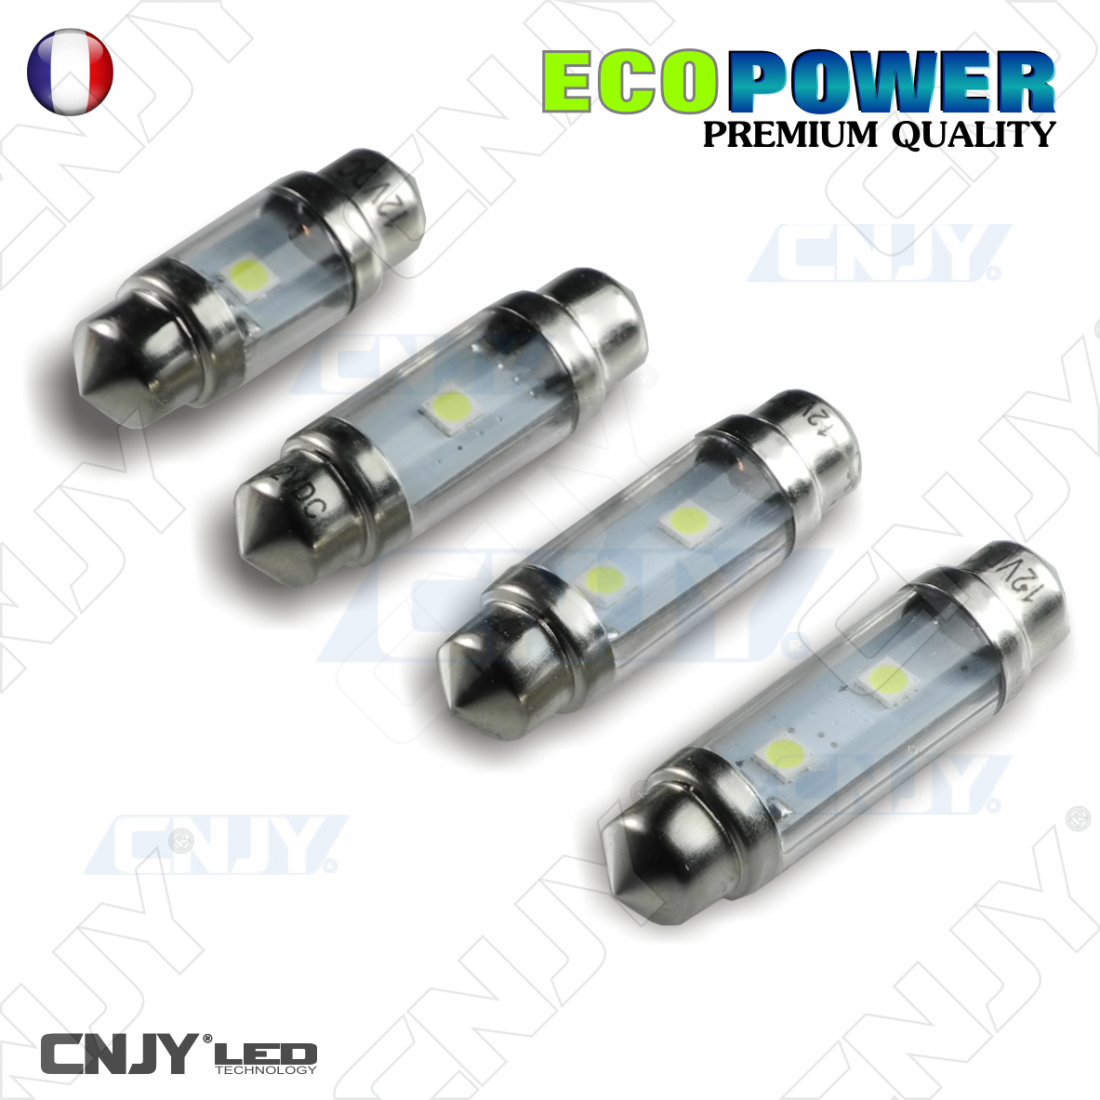 6 x Ampoule LED C5W 36mm Canbus 3 leds Blanc Xénon plafonnier